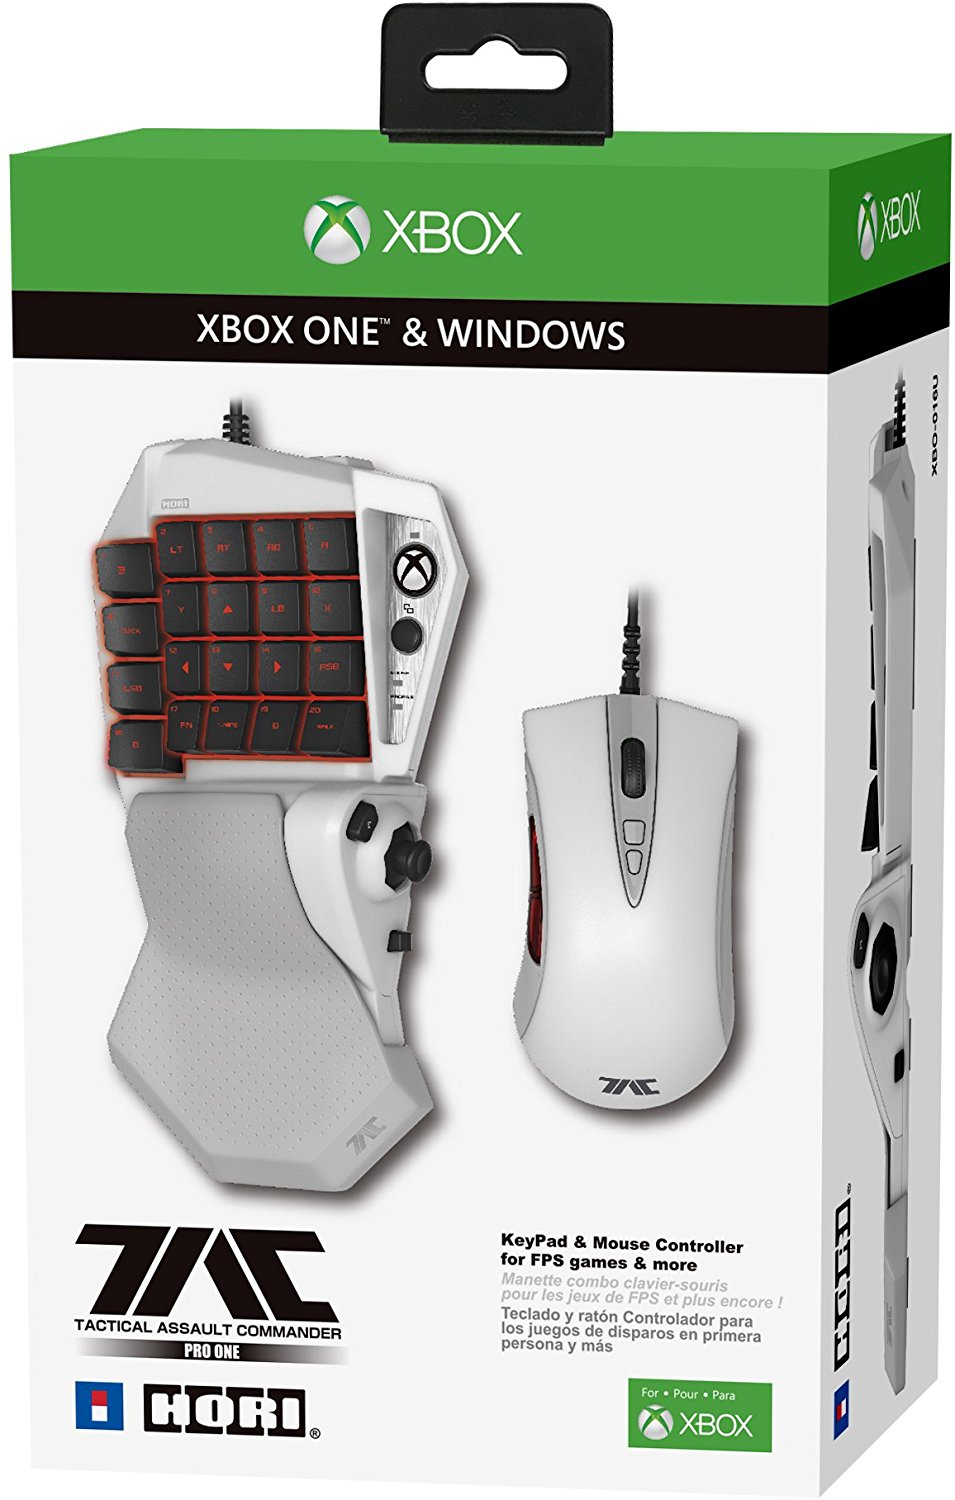 proza Voorwaarden De waarheid vertellen Hori komt met toetsenbord en muis combinatie voor Xbox One - StarGamers